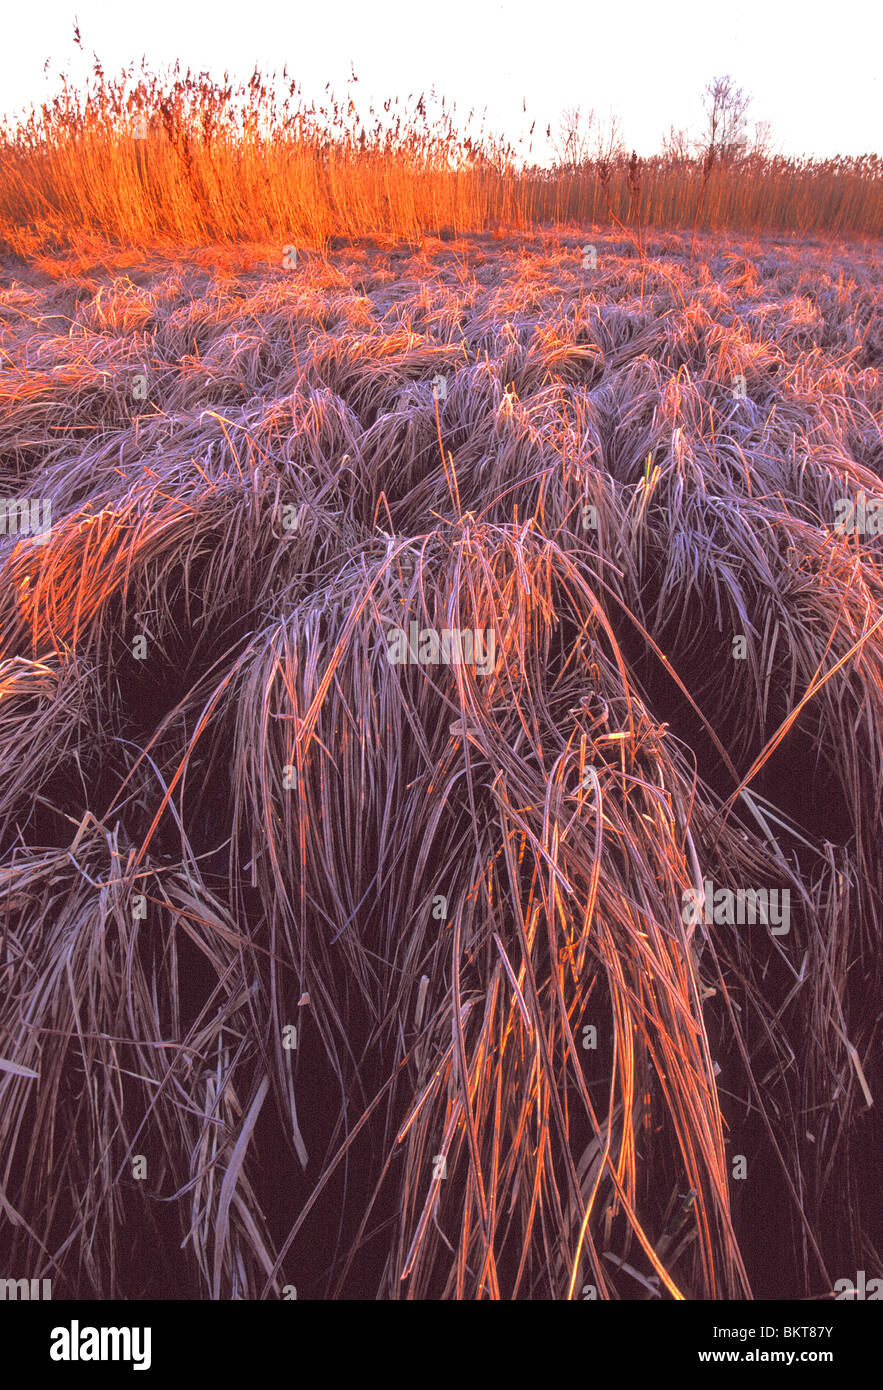 Rietland met berijpte zegges (Carex sp.), BelgiÃ« Reedland with frozen sedges (Carex sp.), Belgium Stock Photo